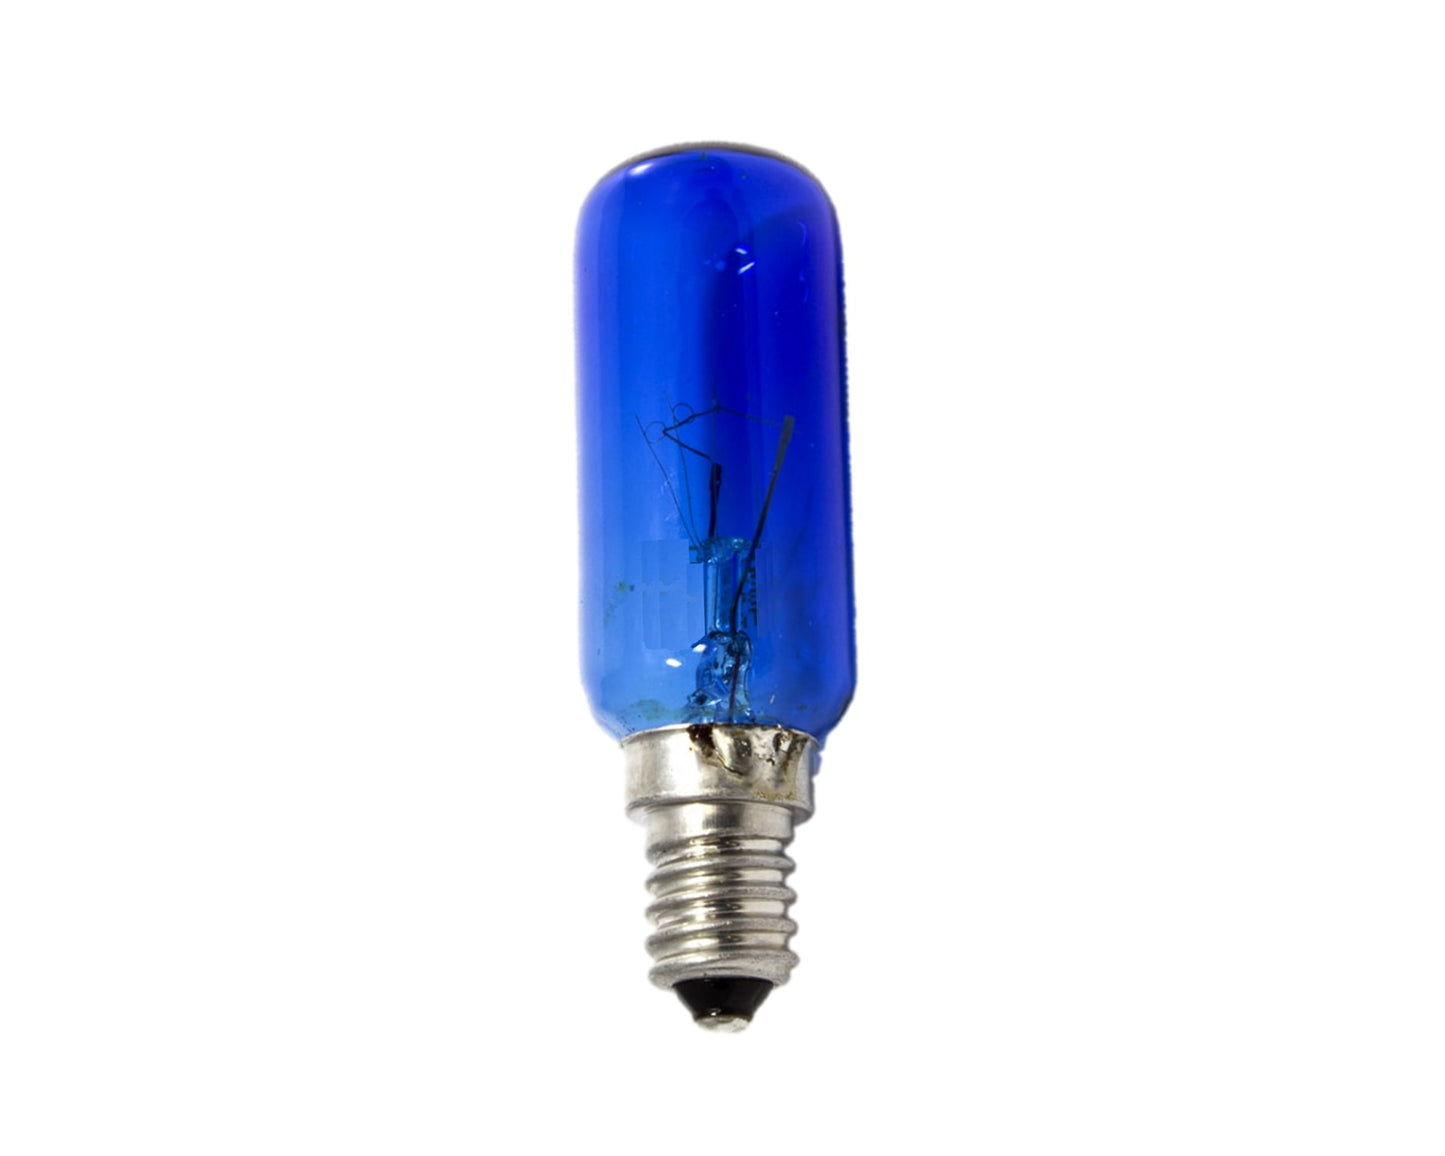 Refrigerator Fridge 'Daylight' Lamp Bulb for Siemens Fridge Freezer 25W E14 SES Blue - 612235, 00612235, 625325, 00625325